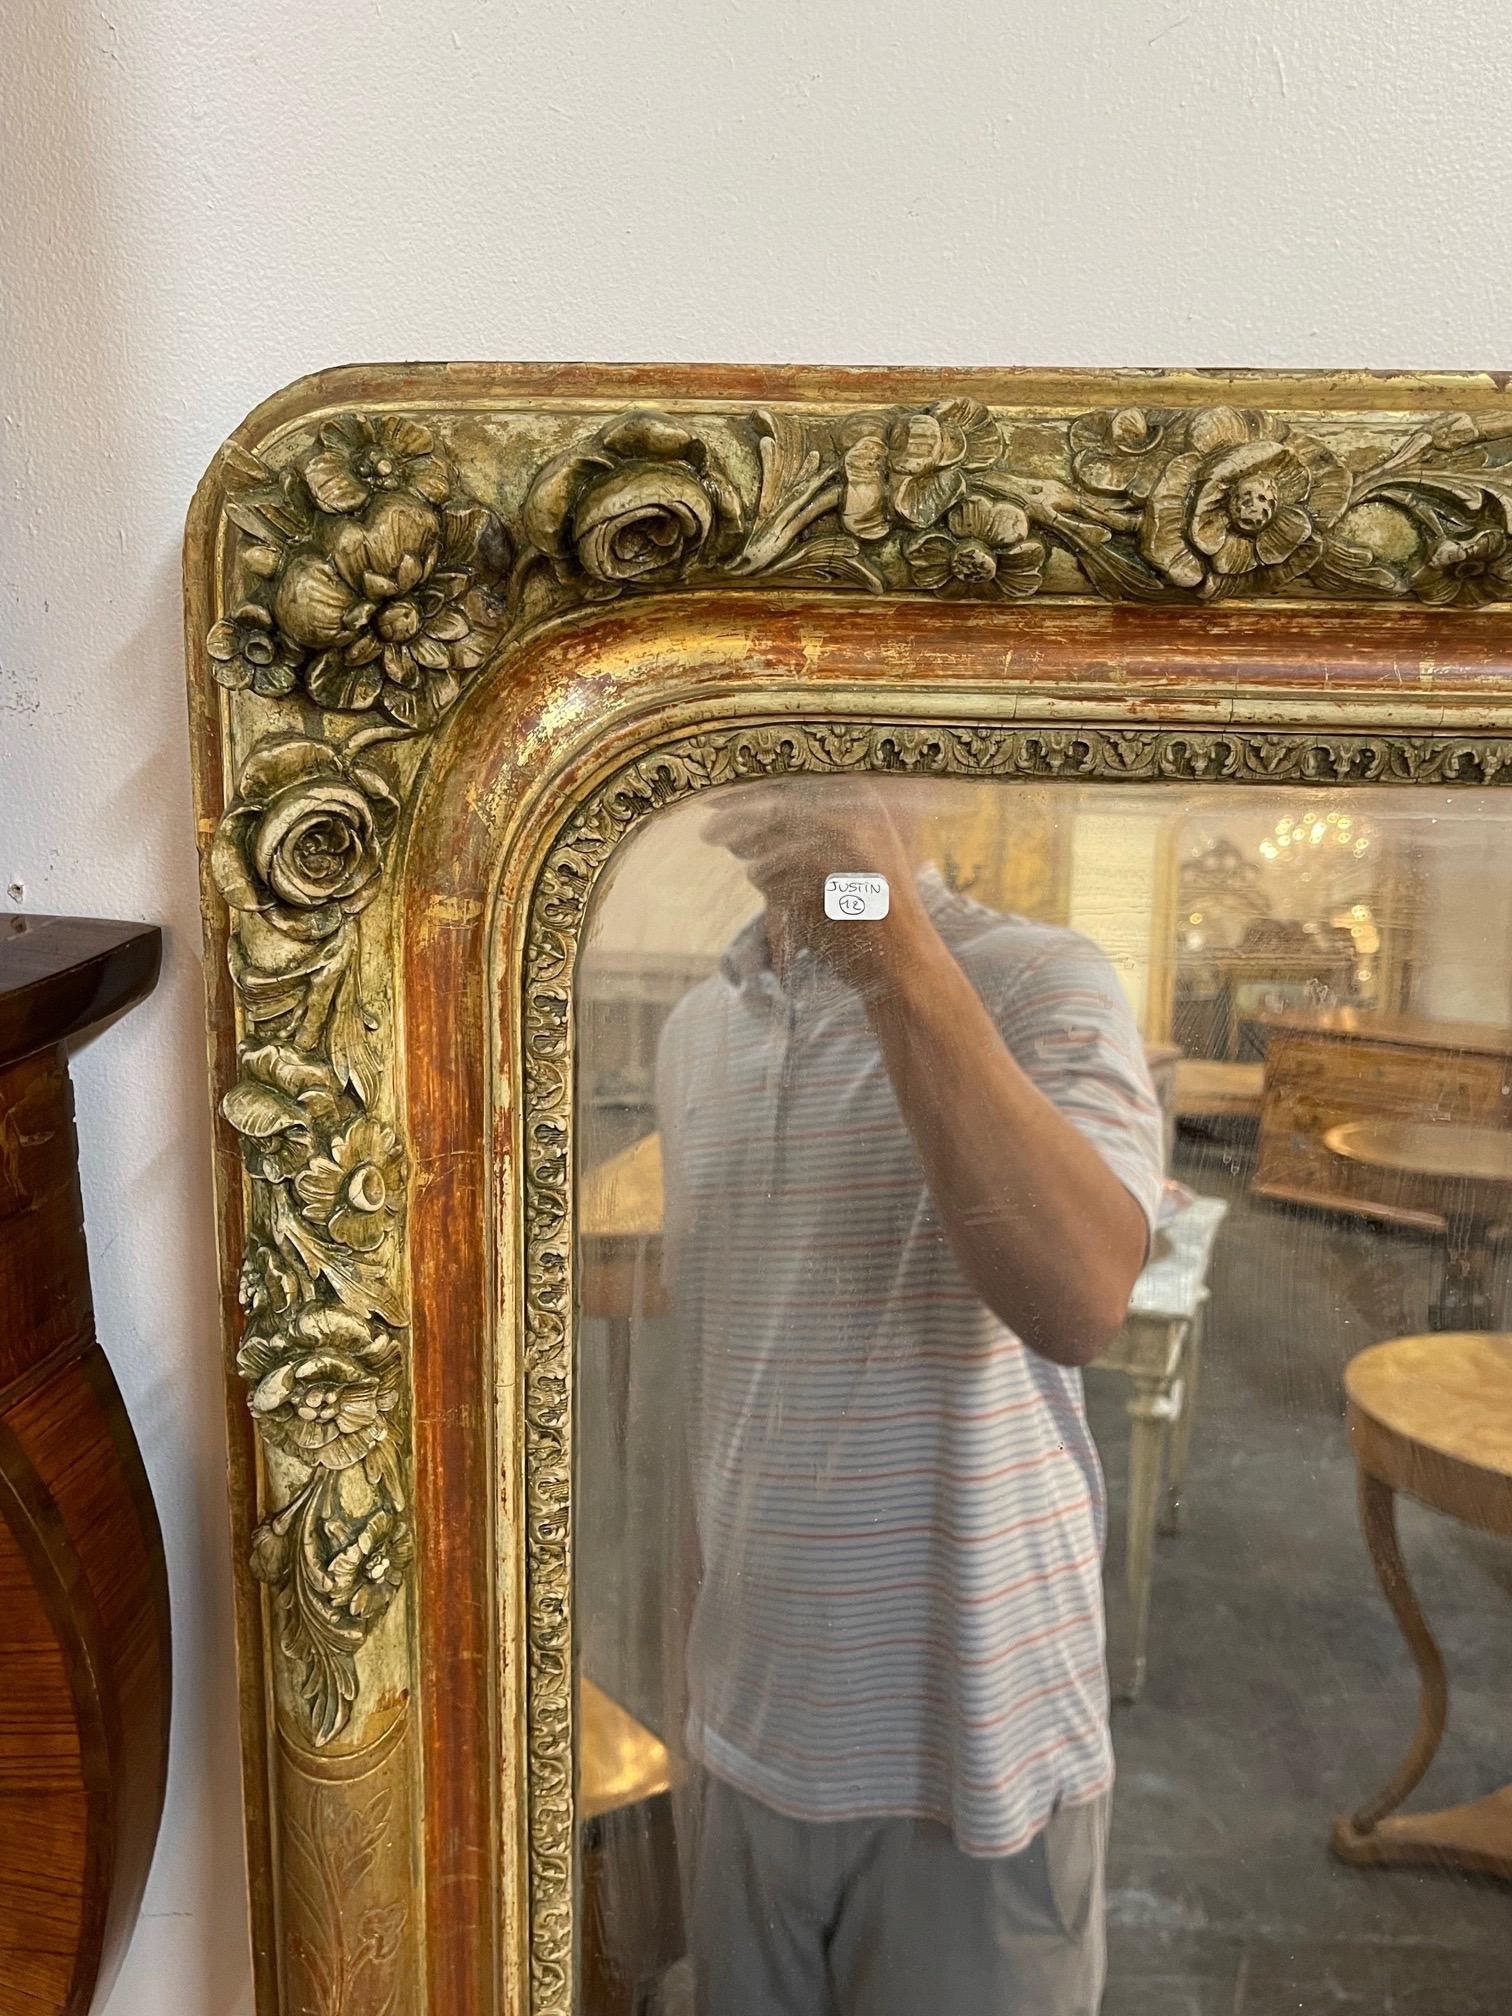 Schöner großer französischer Louis-Philippe-Vergoldungsspiegel mit Blumen aus dem 19. Schön geschnitzt und ebenfalls mit schöner Patina. Der Spiegel hat stellenweise eine leichte rötliche Färbung. So schön!!!